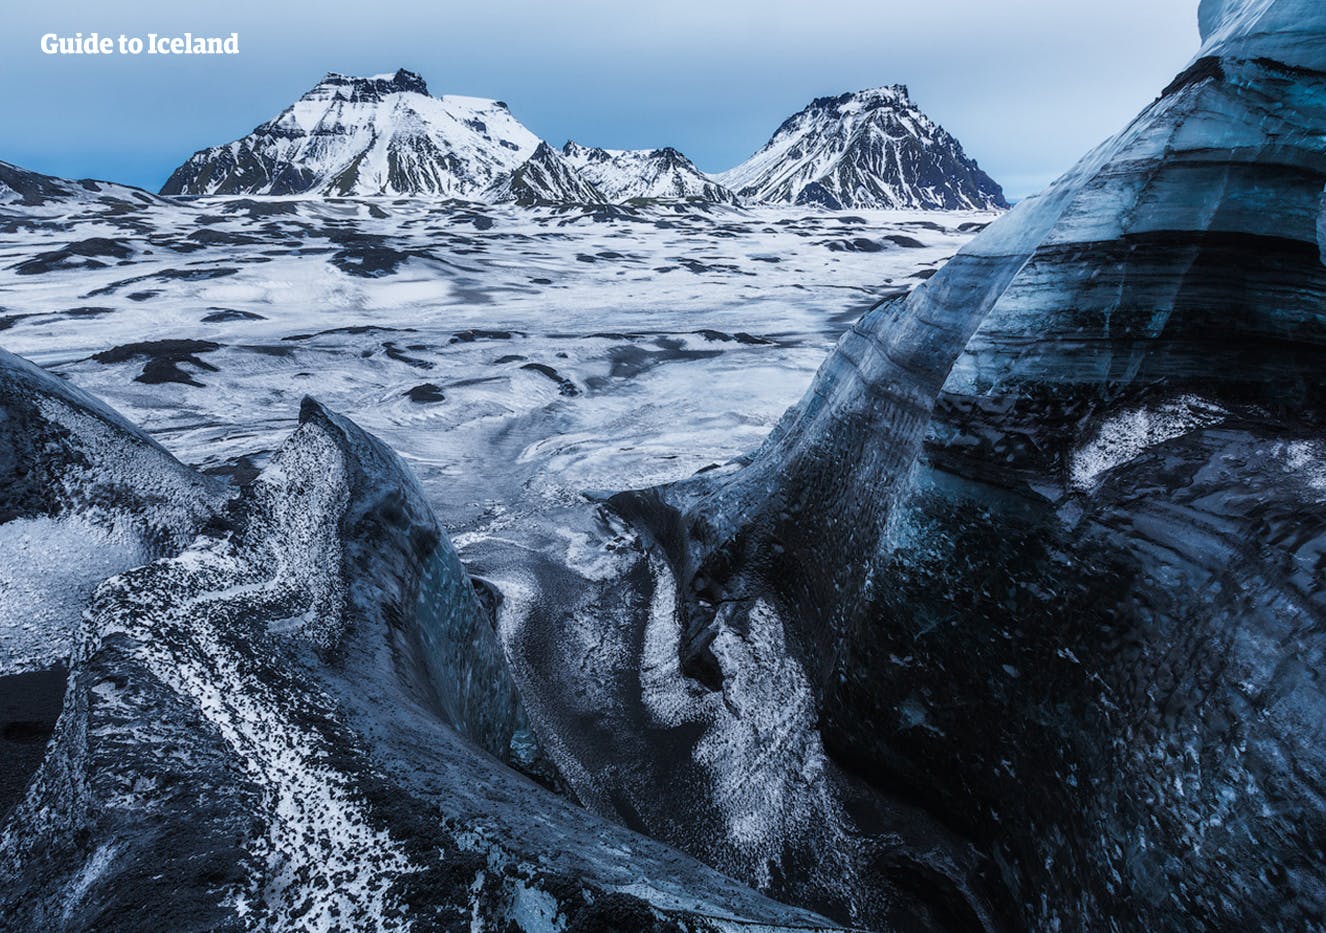 Les sommets glaciaires de Mýrdalsgjökull sont couverts de cendres noires provenant d'éruptions volcaniques passées